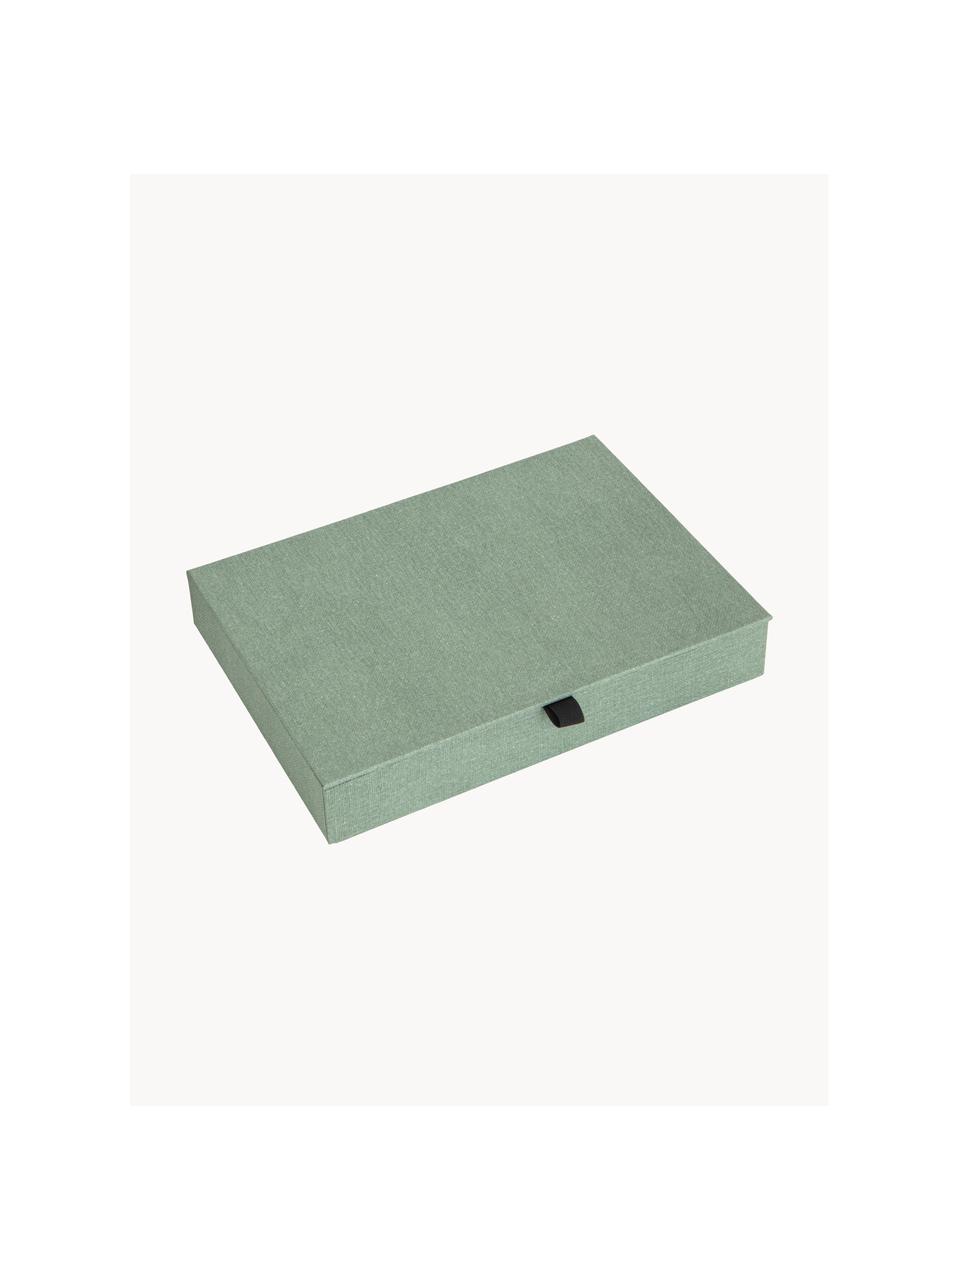 Portagioie Precious, Cartone solido, Verde salvia, Larg. 27 x Prof. 19 cm